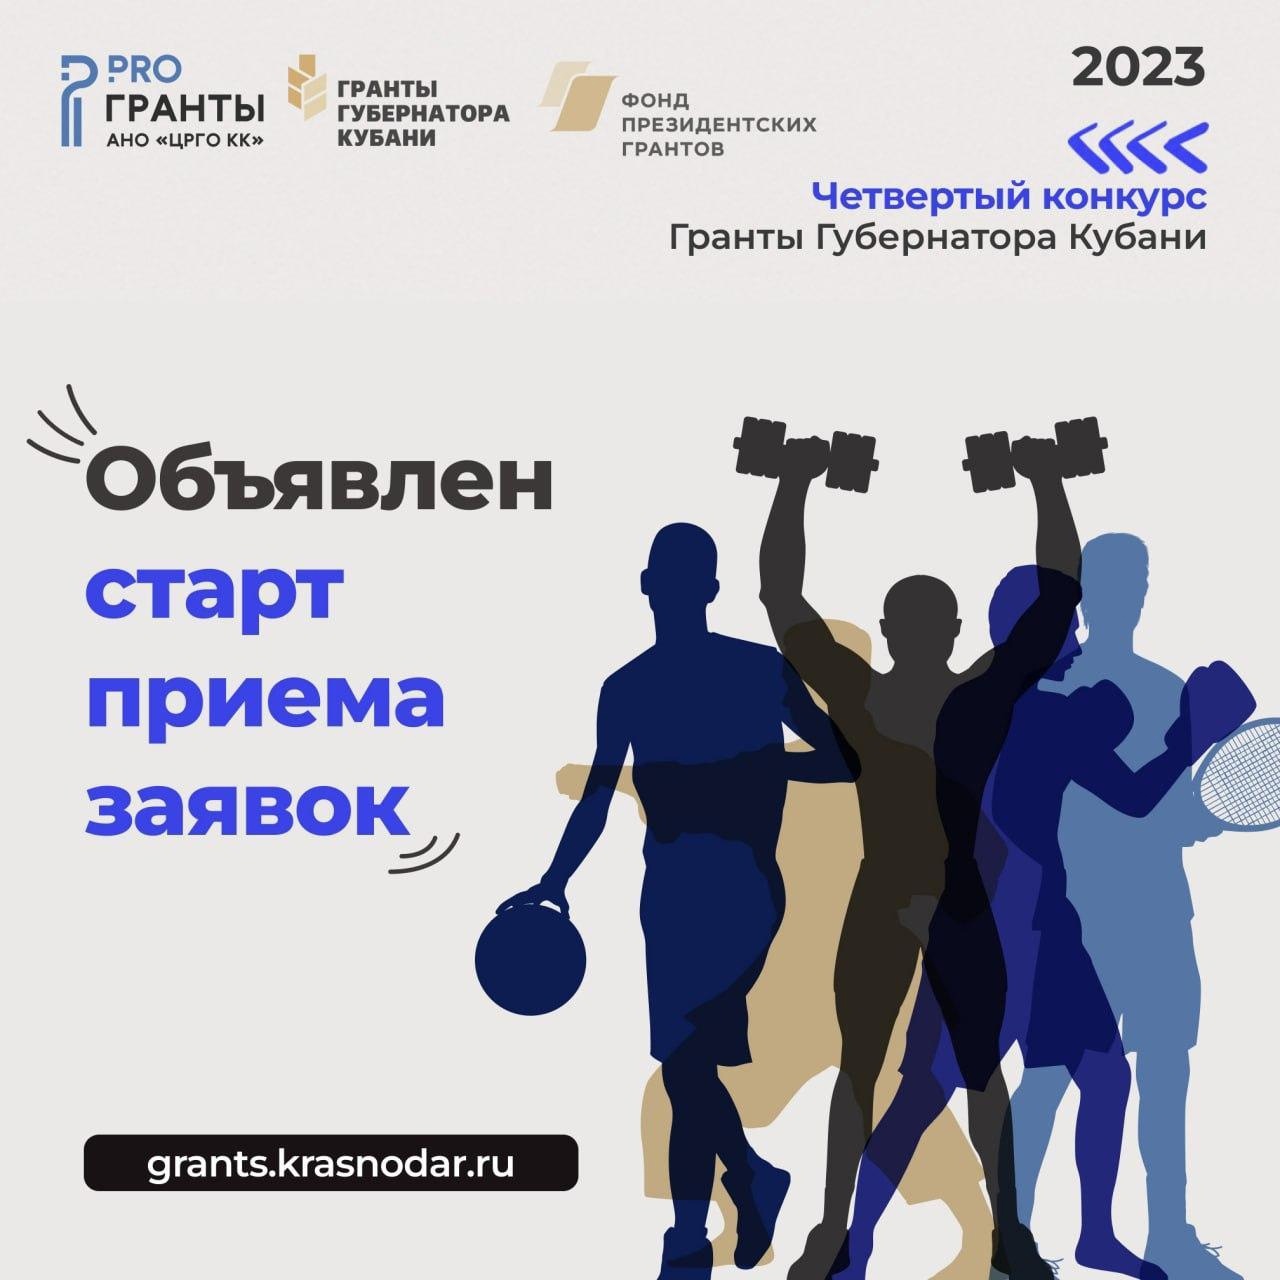 Стартовал прием заявок на четвертый конкурс Грантов Губернатора Кубани 2023 года!